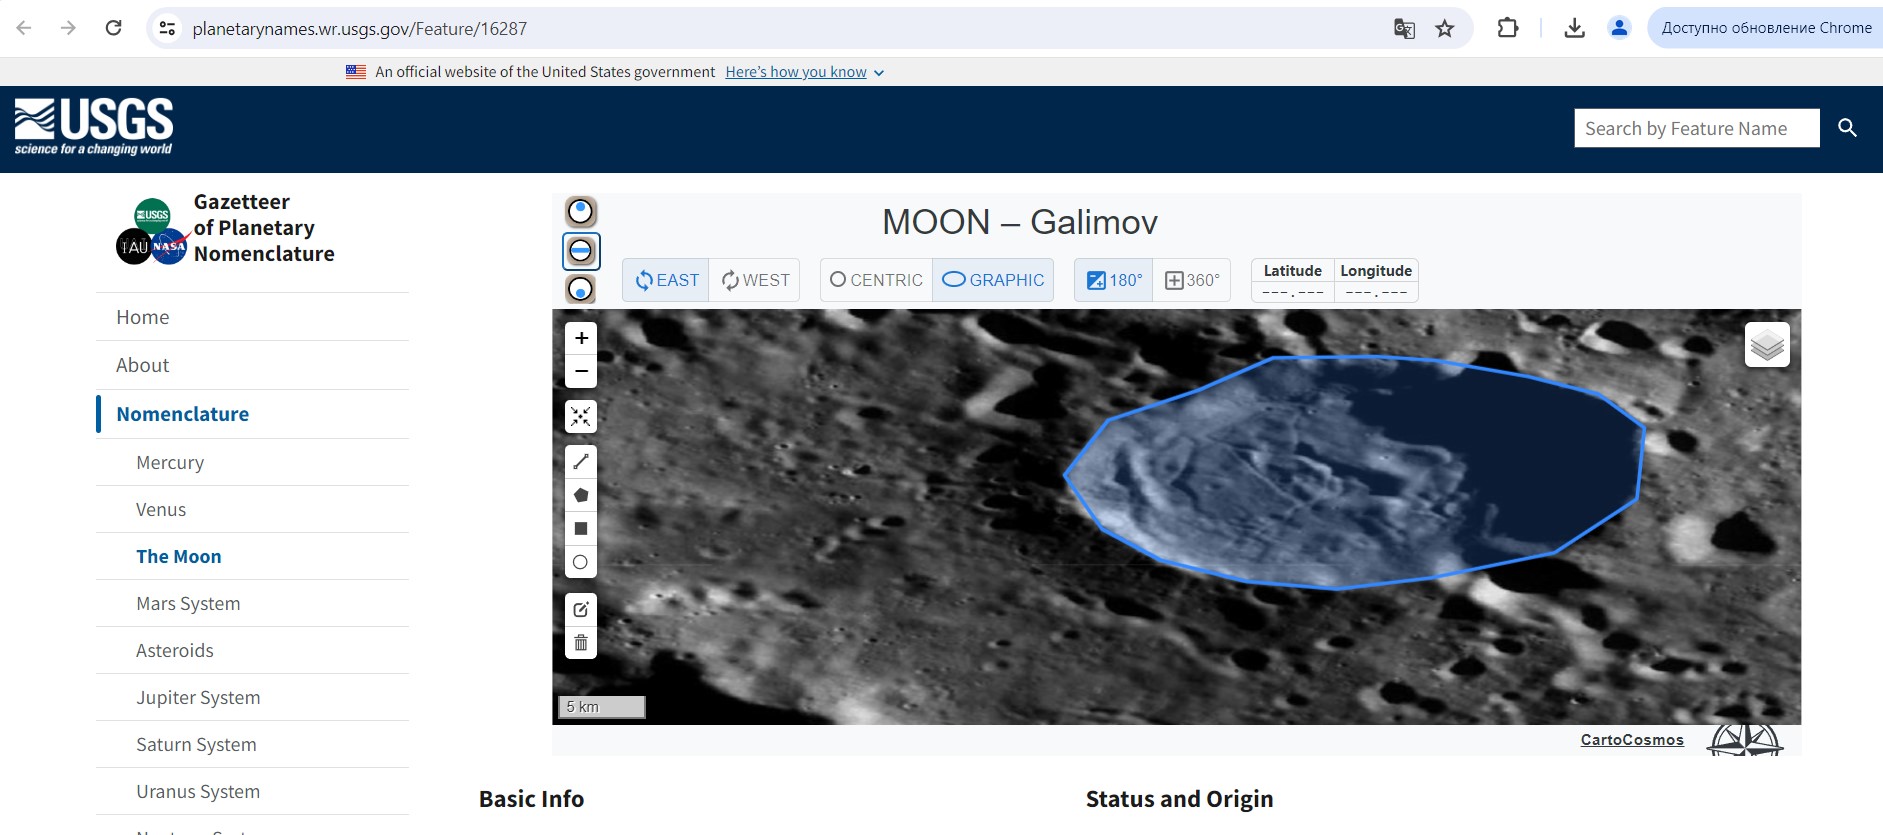 Скриншот сайта МАС с изображением кратера Галимов